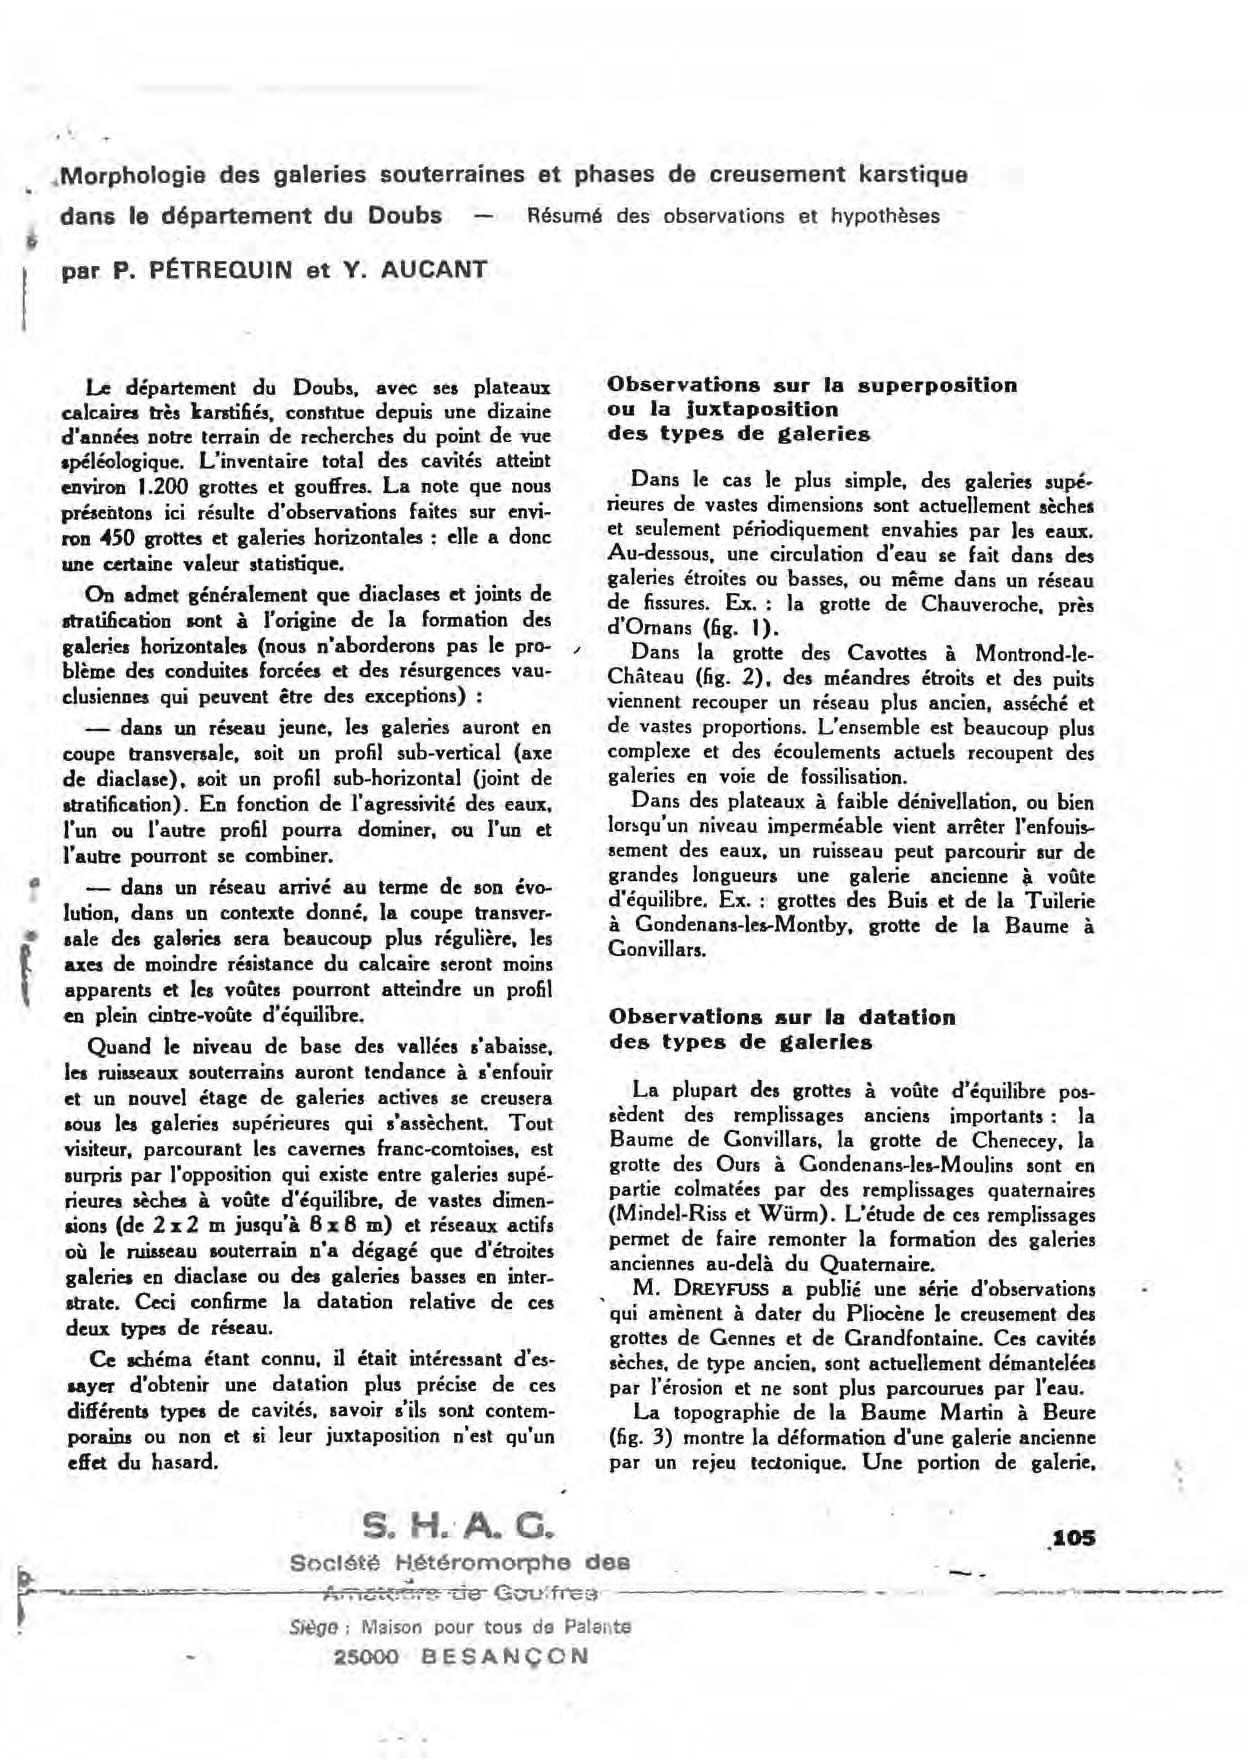 Publié dans Bulletin de la Fédération des sociétés d'histoire naturelle de Franche-Comté > N° 72, fasc. 4 (Décembre 1974) . - p. 105-109